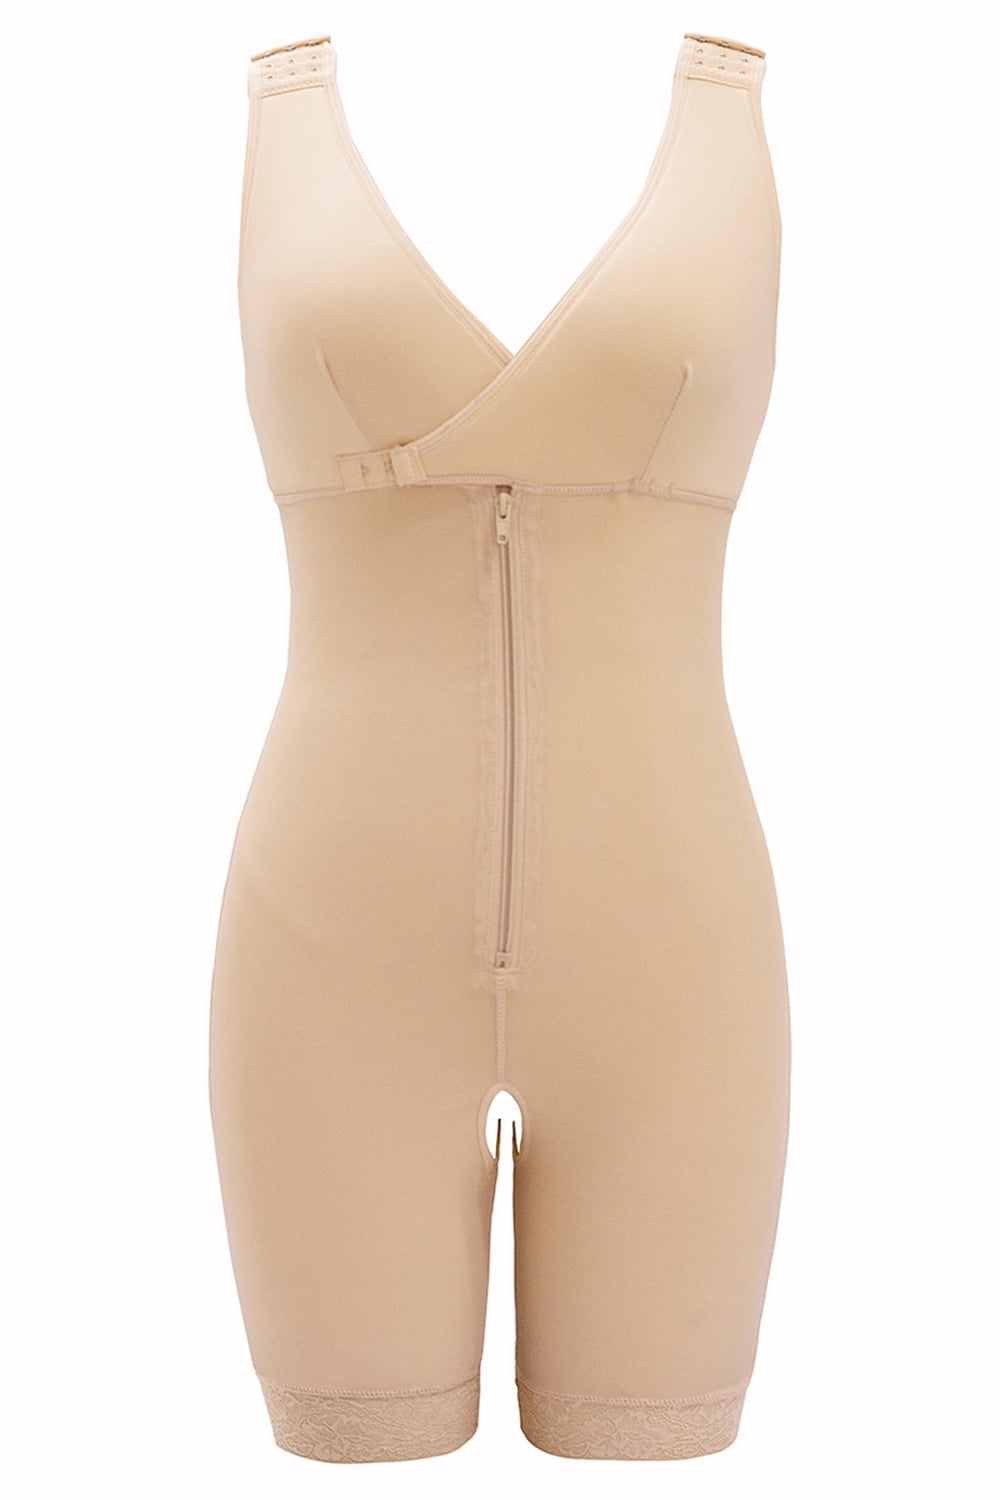 OVBMPZD Women's V-Neck Body Suit Zipper Lace Compression Shapewear Bodysuit  Plus Size Beige 3XL